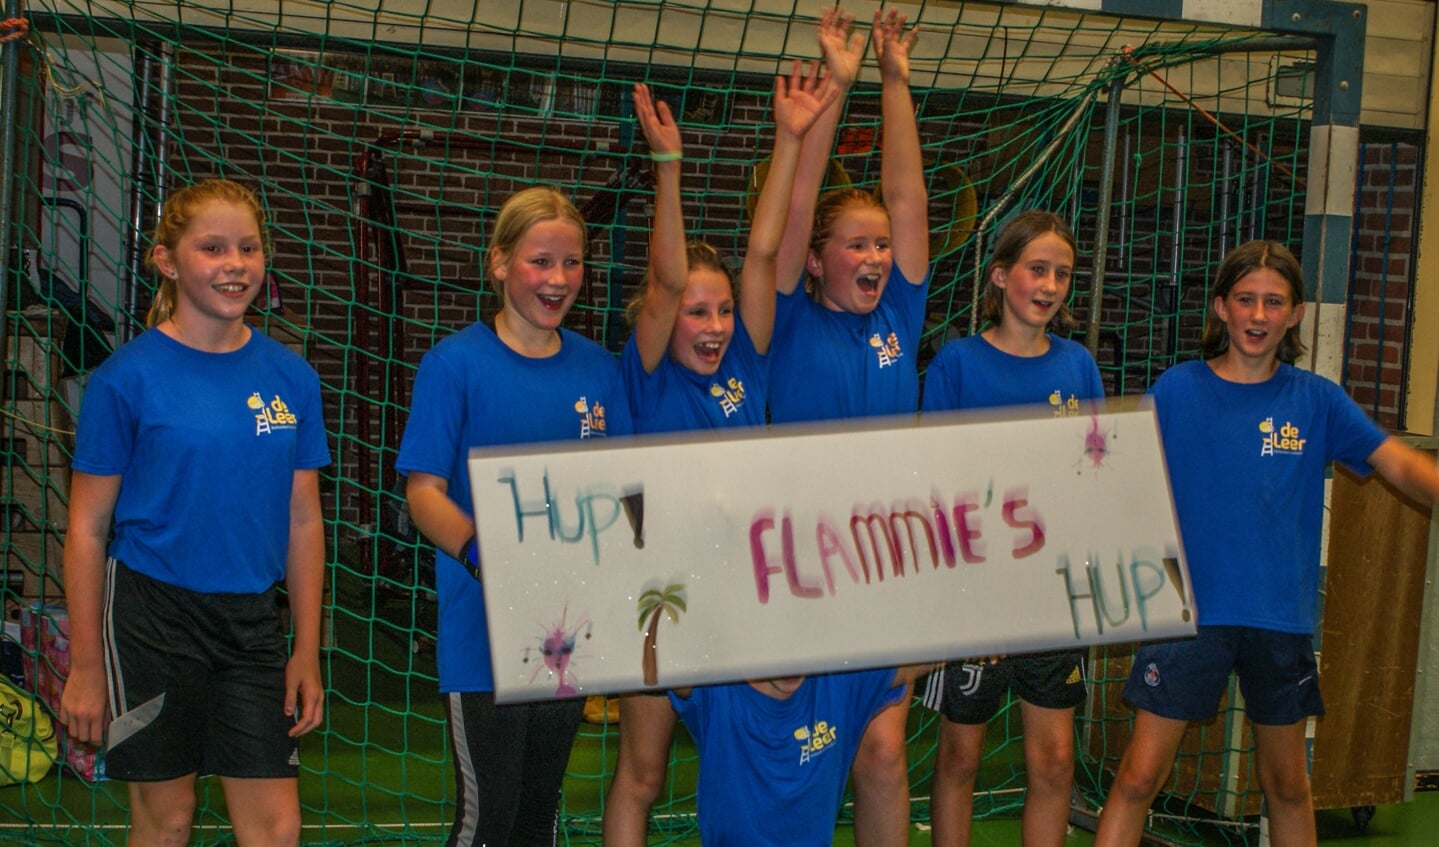 De winnaar bij de meisjes was team Flammies van Basisschool De Leer. Foto: PR